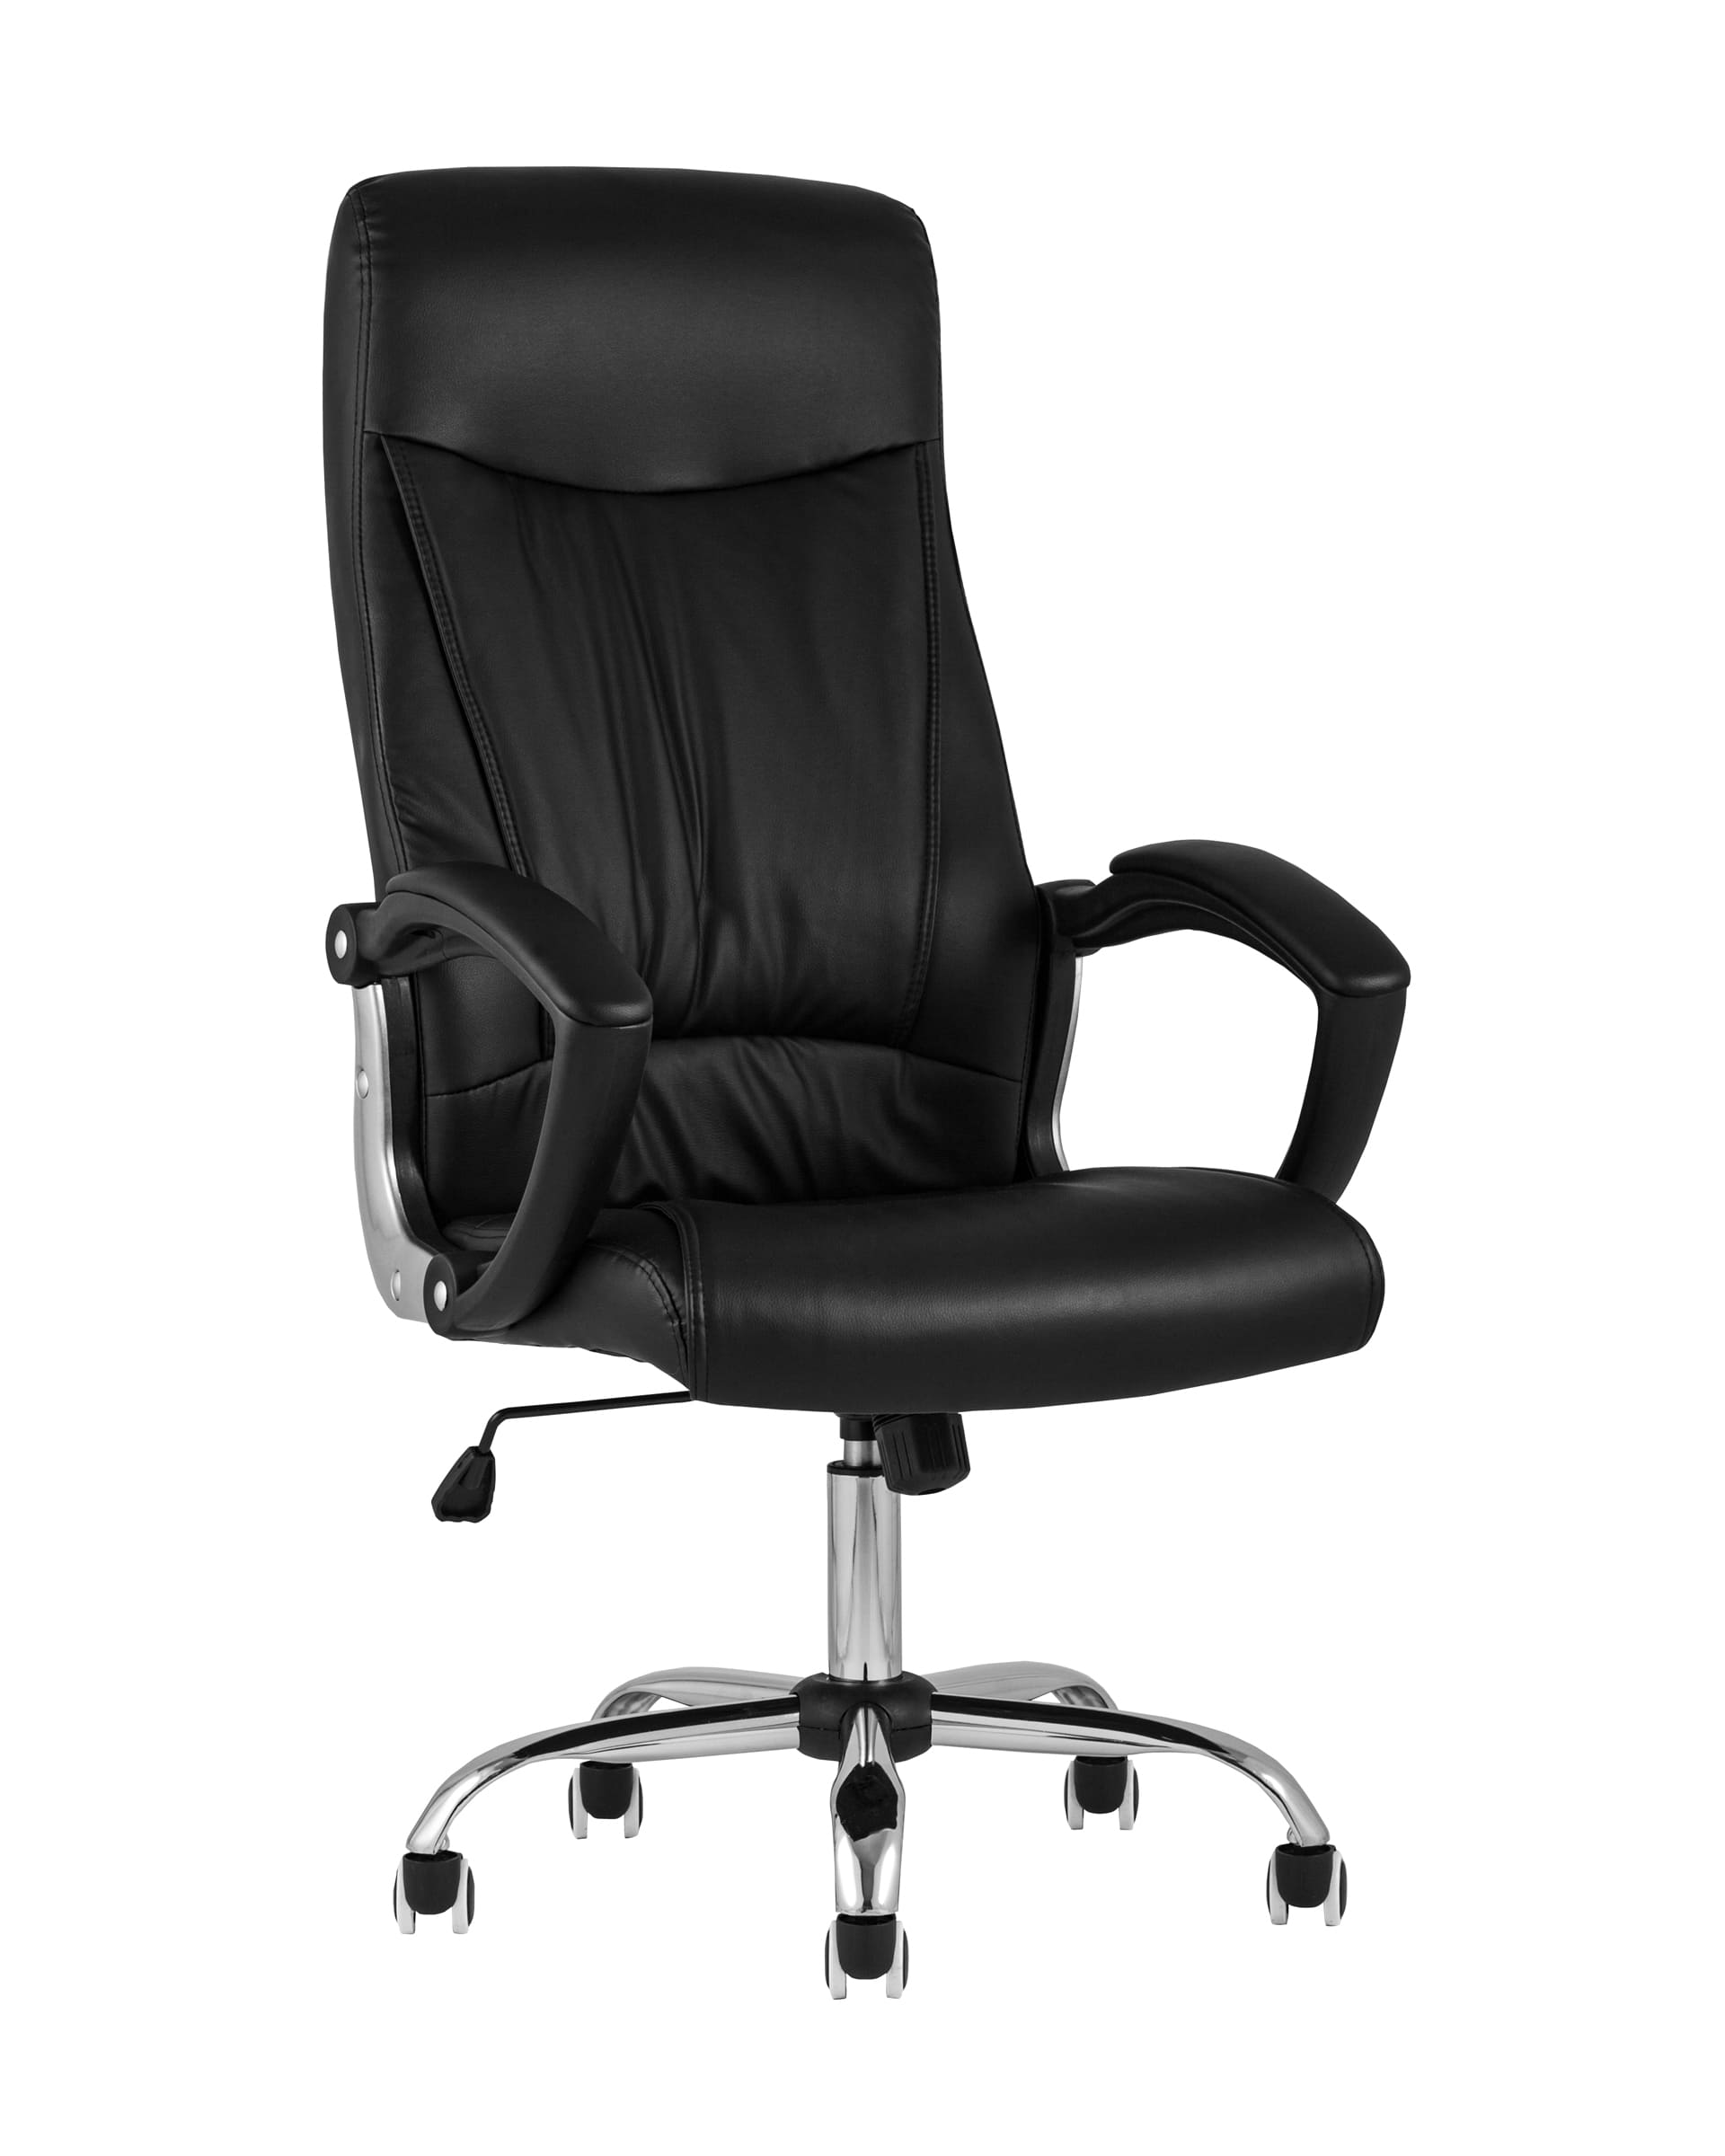 Компьютерное кресло TopChairs Tower офисное черное в обивке из экокожи, механизм качания Top Gun